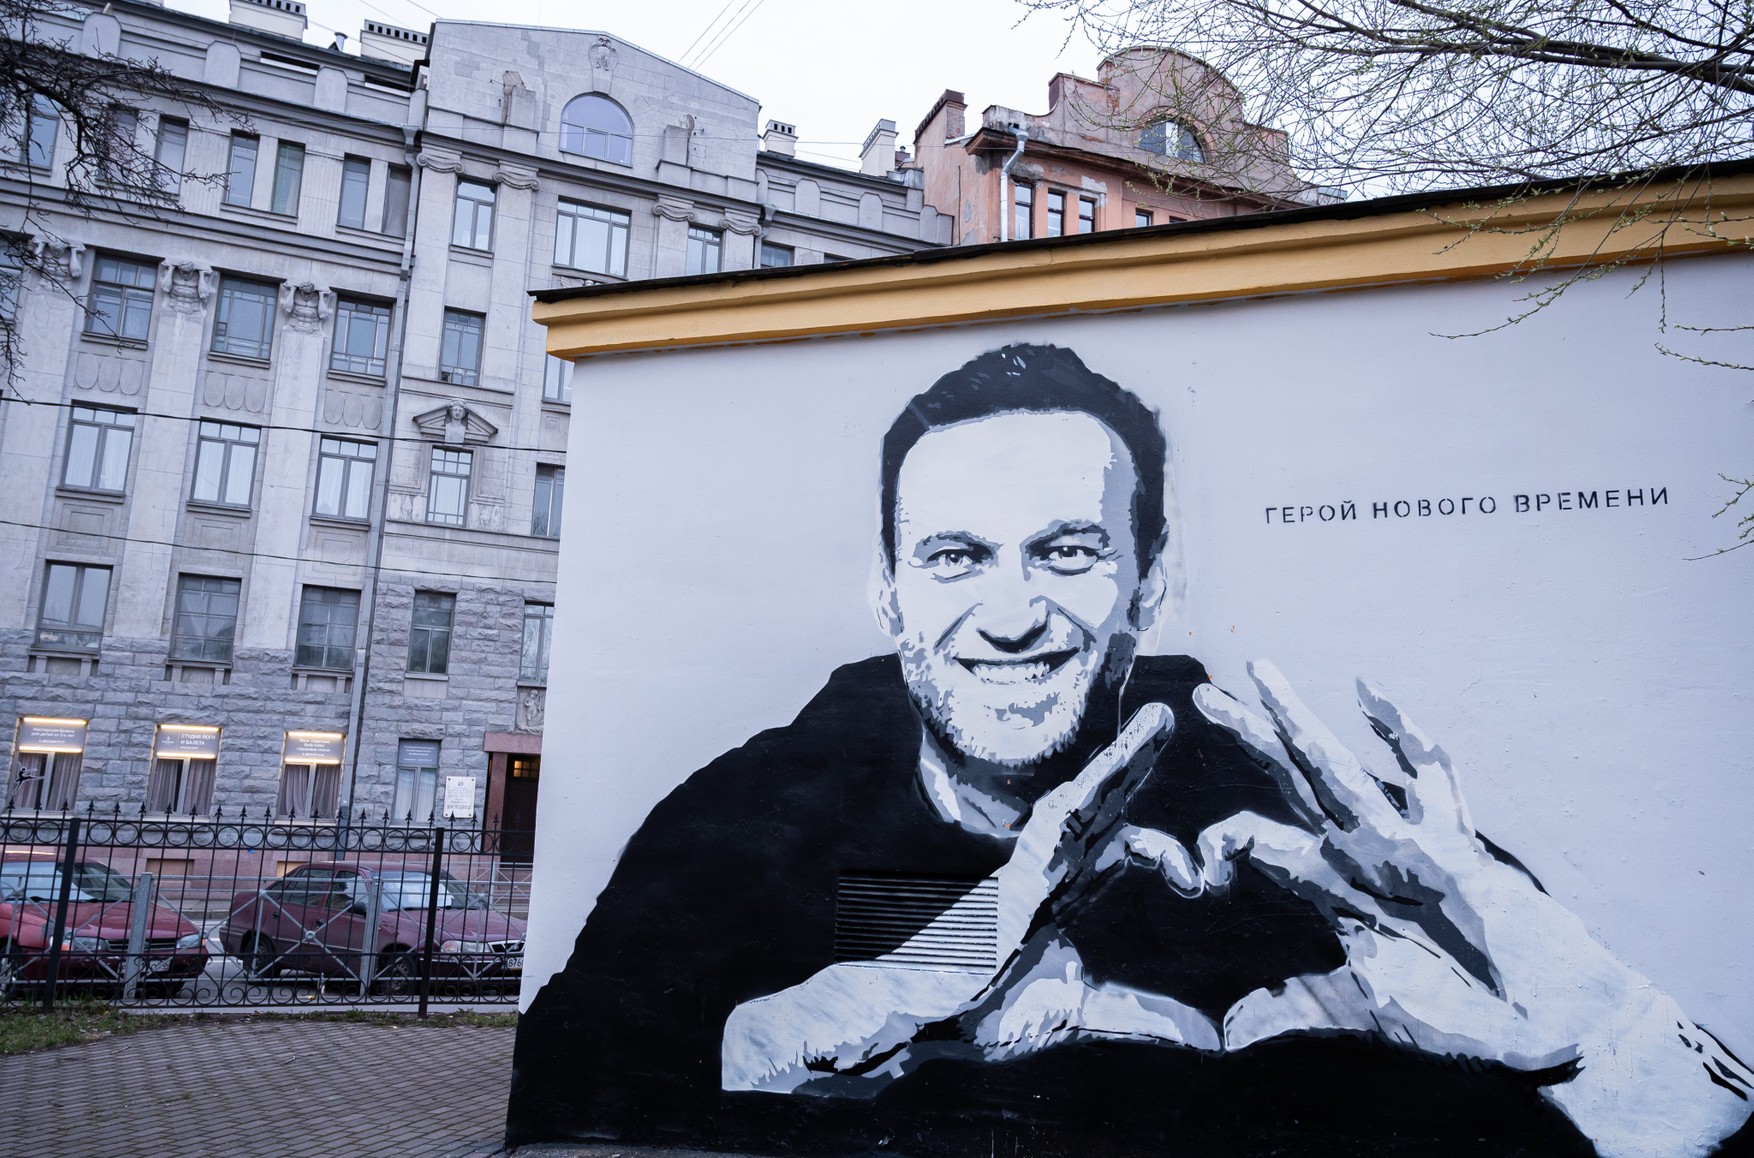 У Петербурзі комунальники зафарбували графіті з Навальним і написом «Герой нового часу». Малюнок з'явився сьогодні вранці